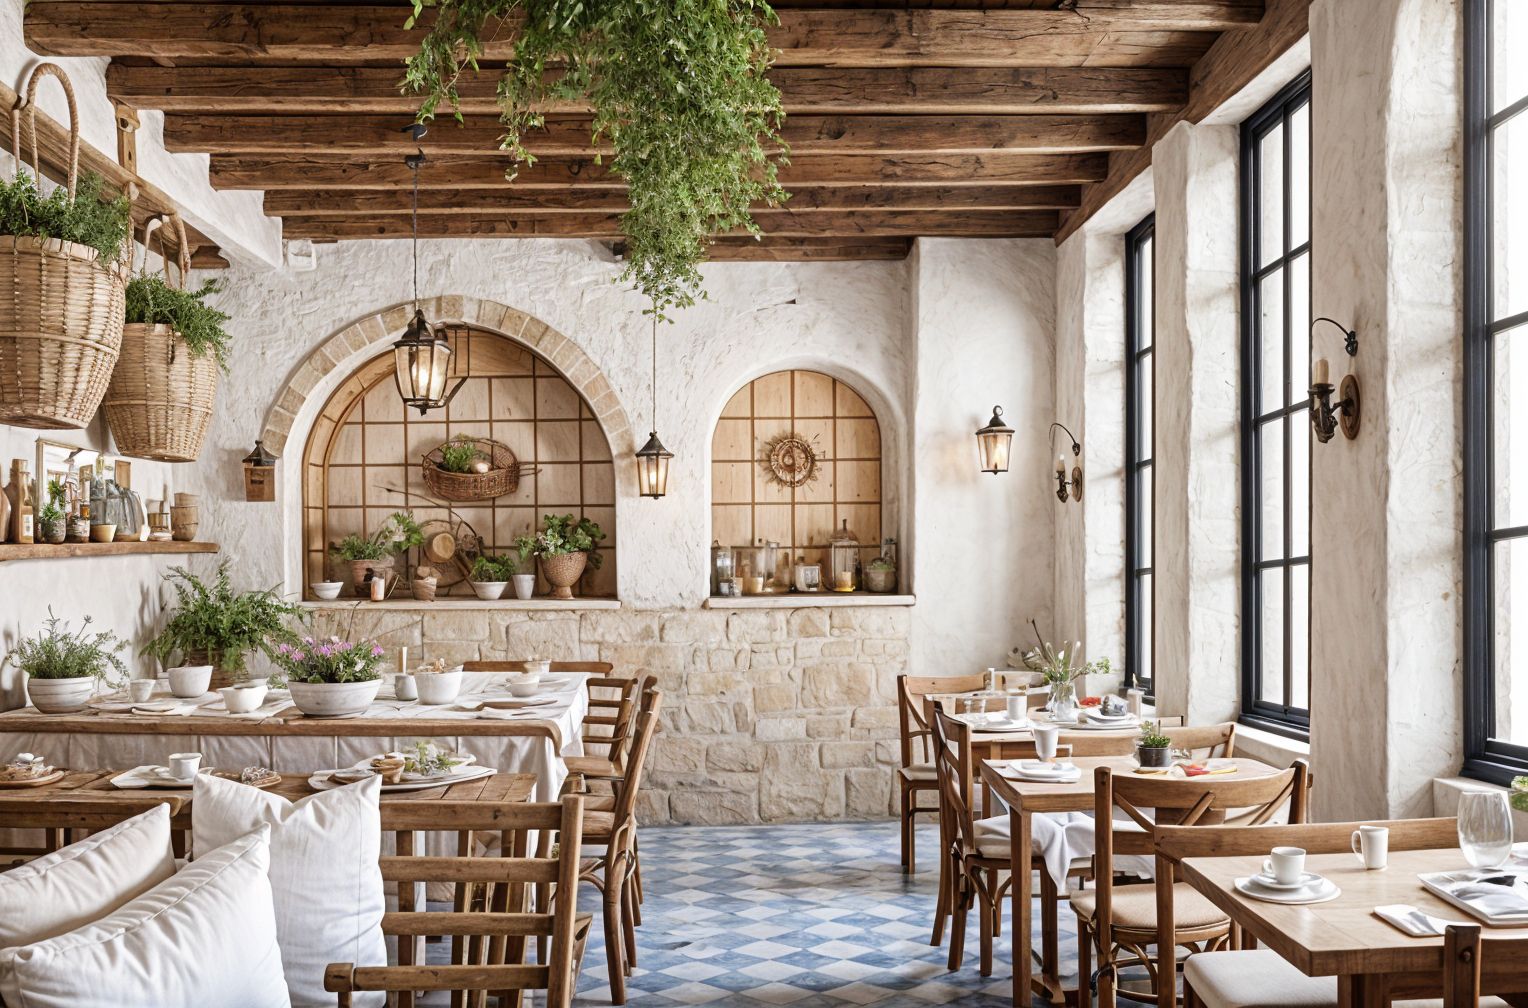 Mediterranean Restaurant